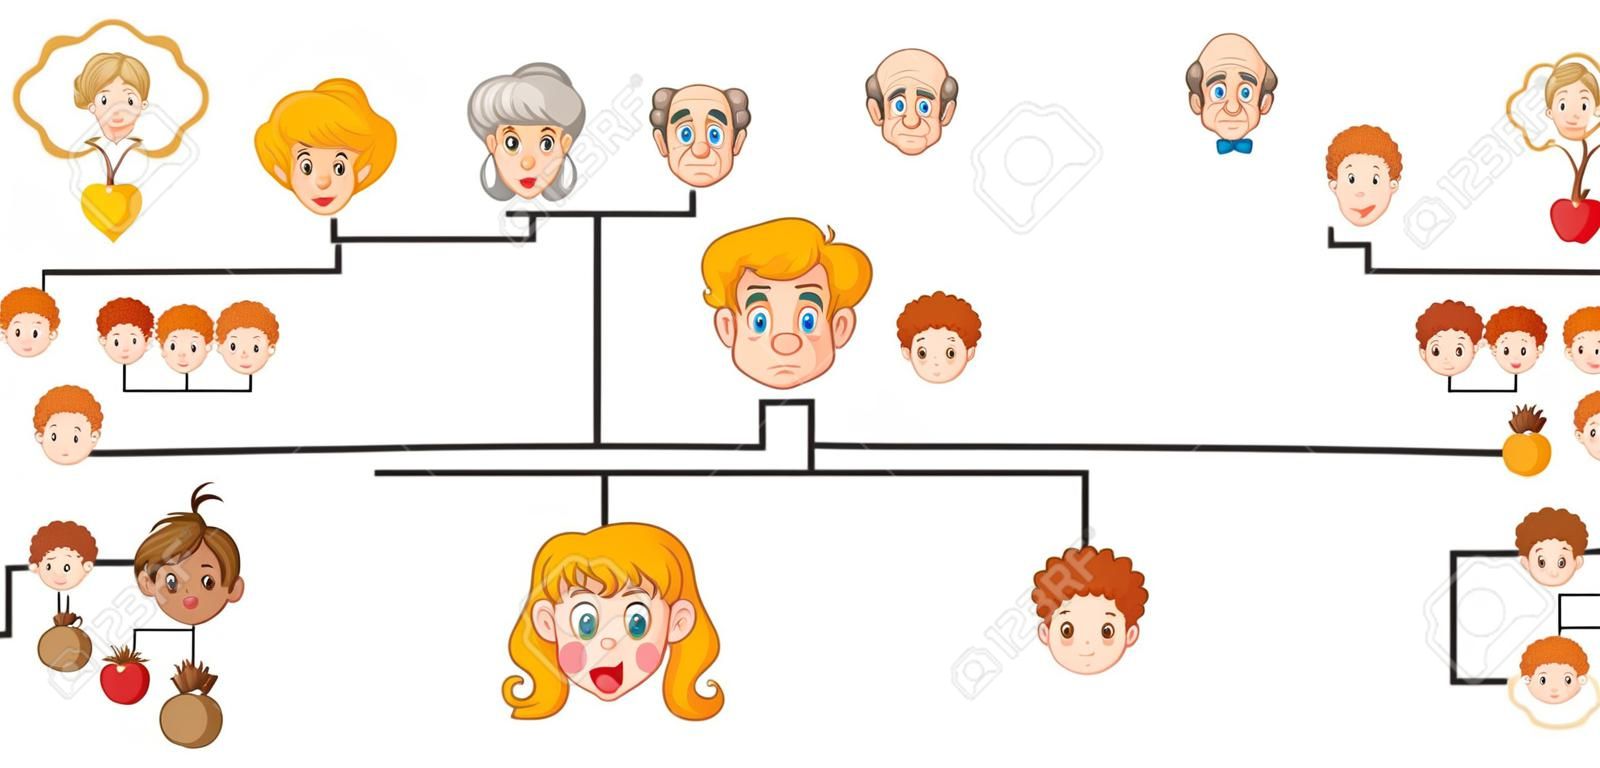 Cartaz mostrando uma árvore genealógica